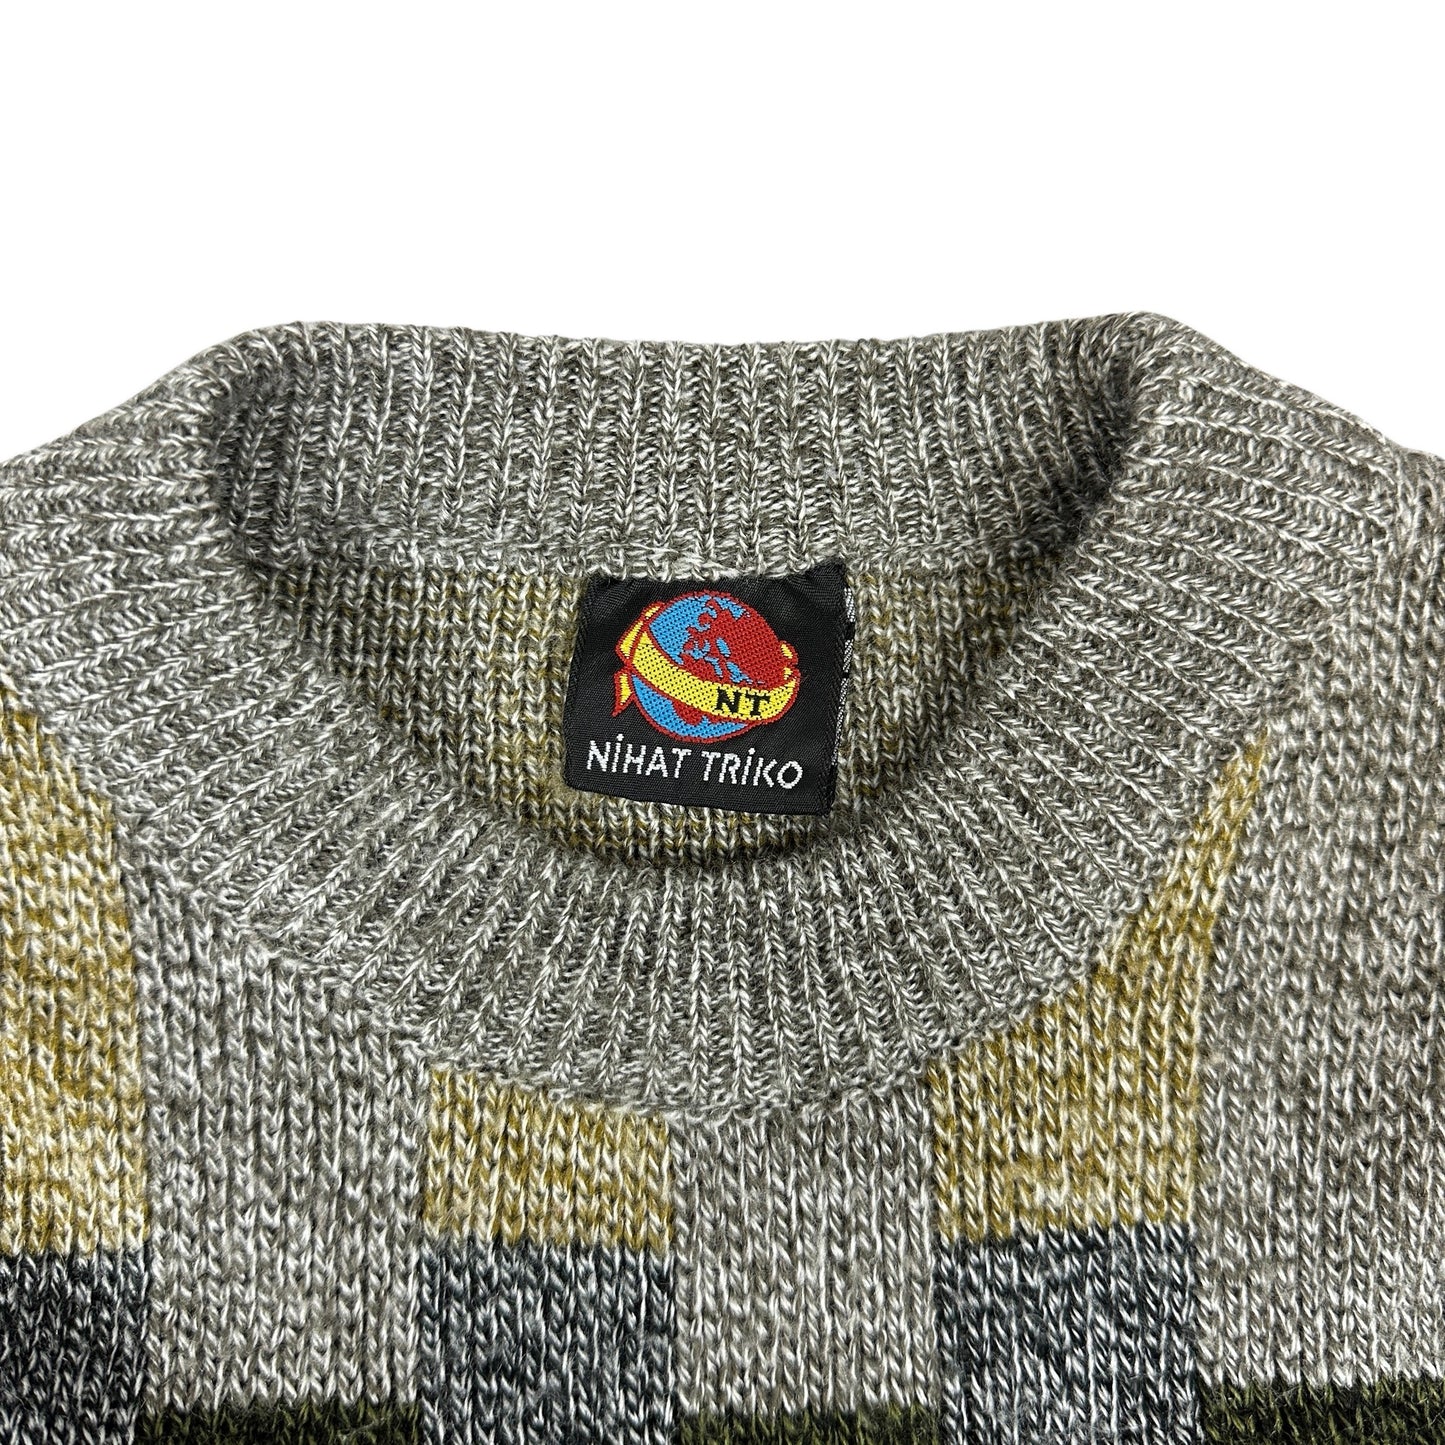 Vintage 80s Patterned Knit Jumper XL